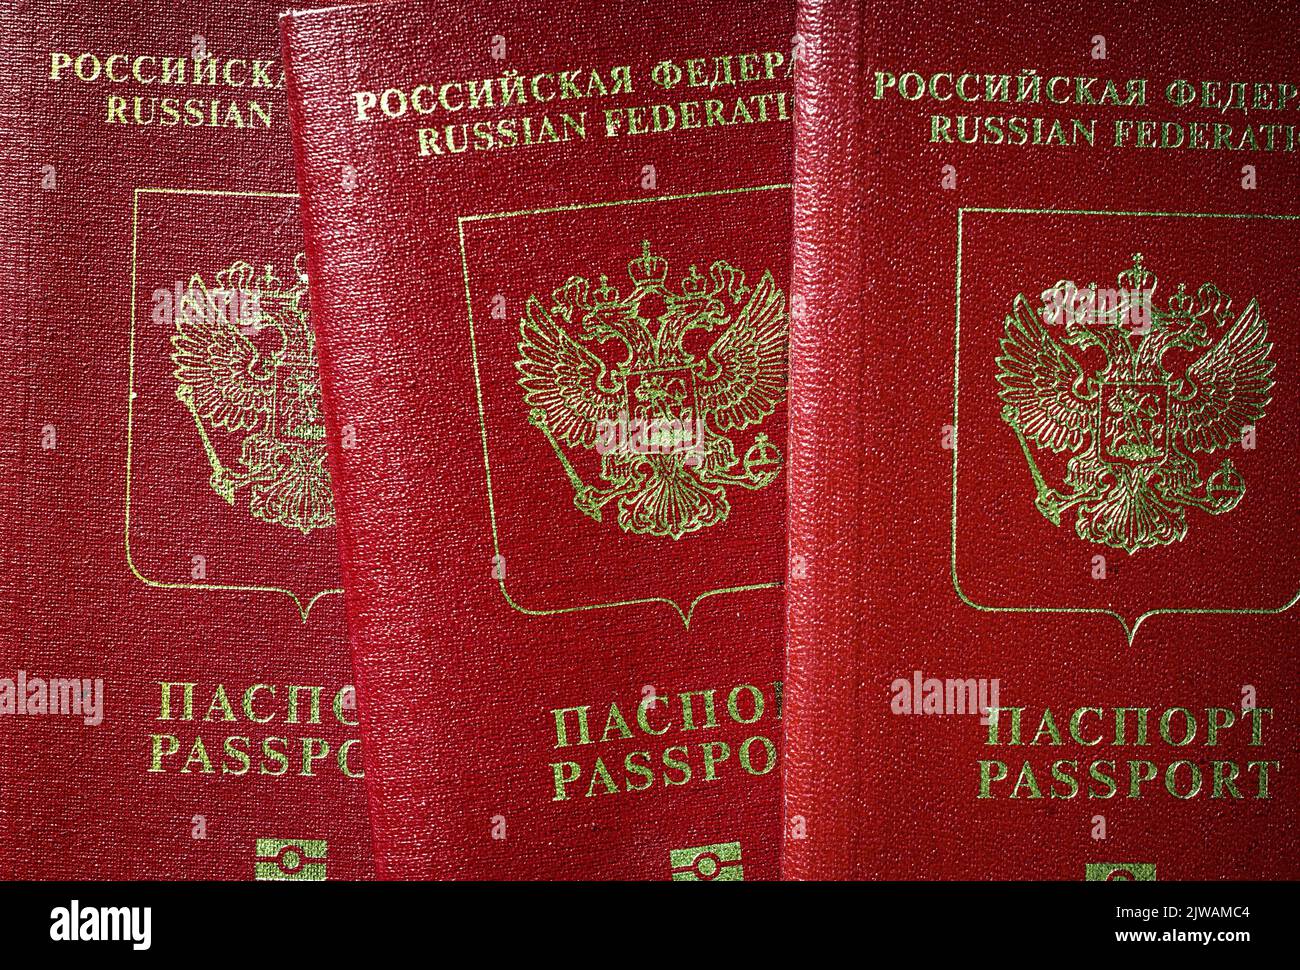 Passeports russes vue de dessus, groupe de passeports touristiques de Russie. Concept de restriction des voyages, rejet des visas, crise touristique, sanctions, Ukraine wa Banque D'Images